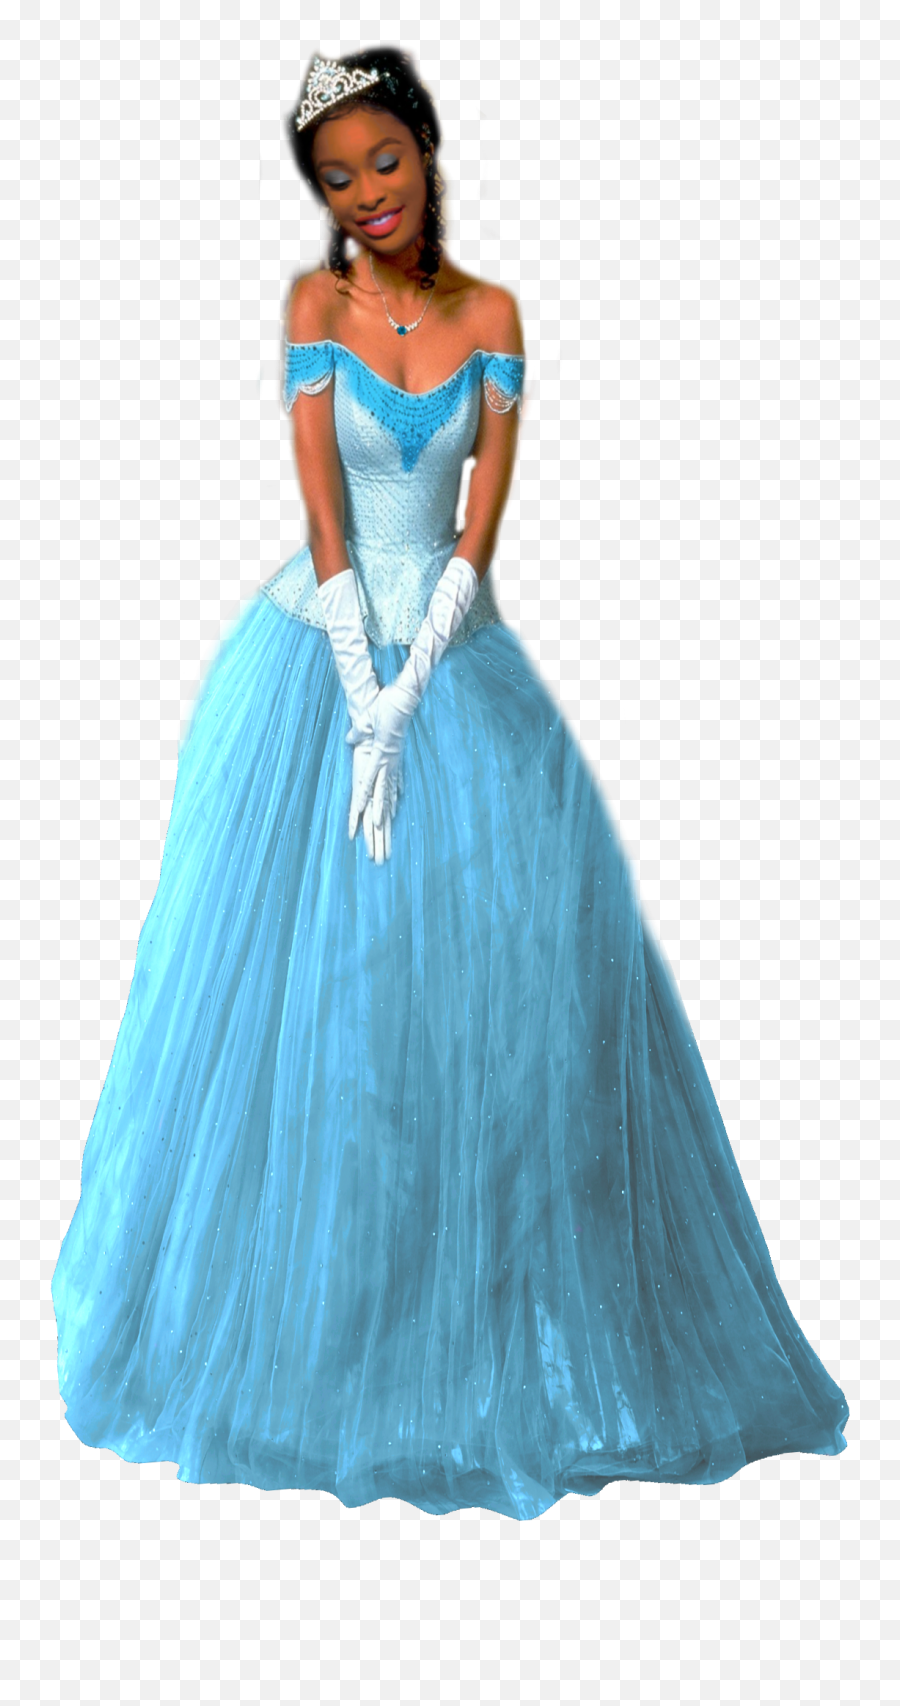 Coco Jones As Tiana Blue Dress - Princesas De Disney Fan Blue Dress Princess Tiana Emoji,Disney Coco Emoji